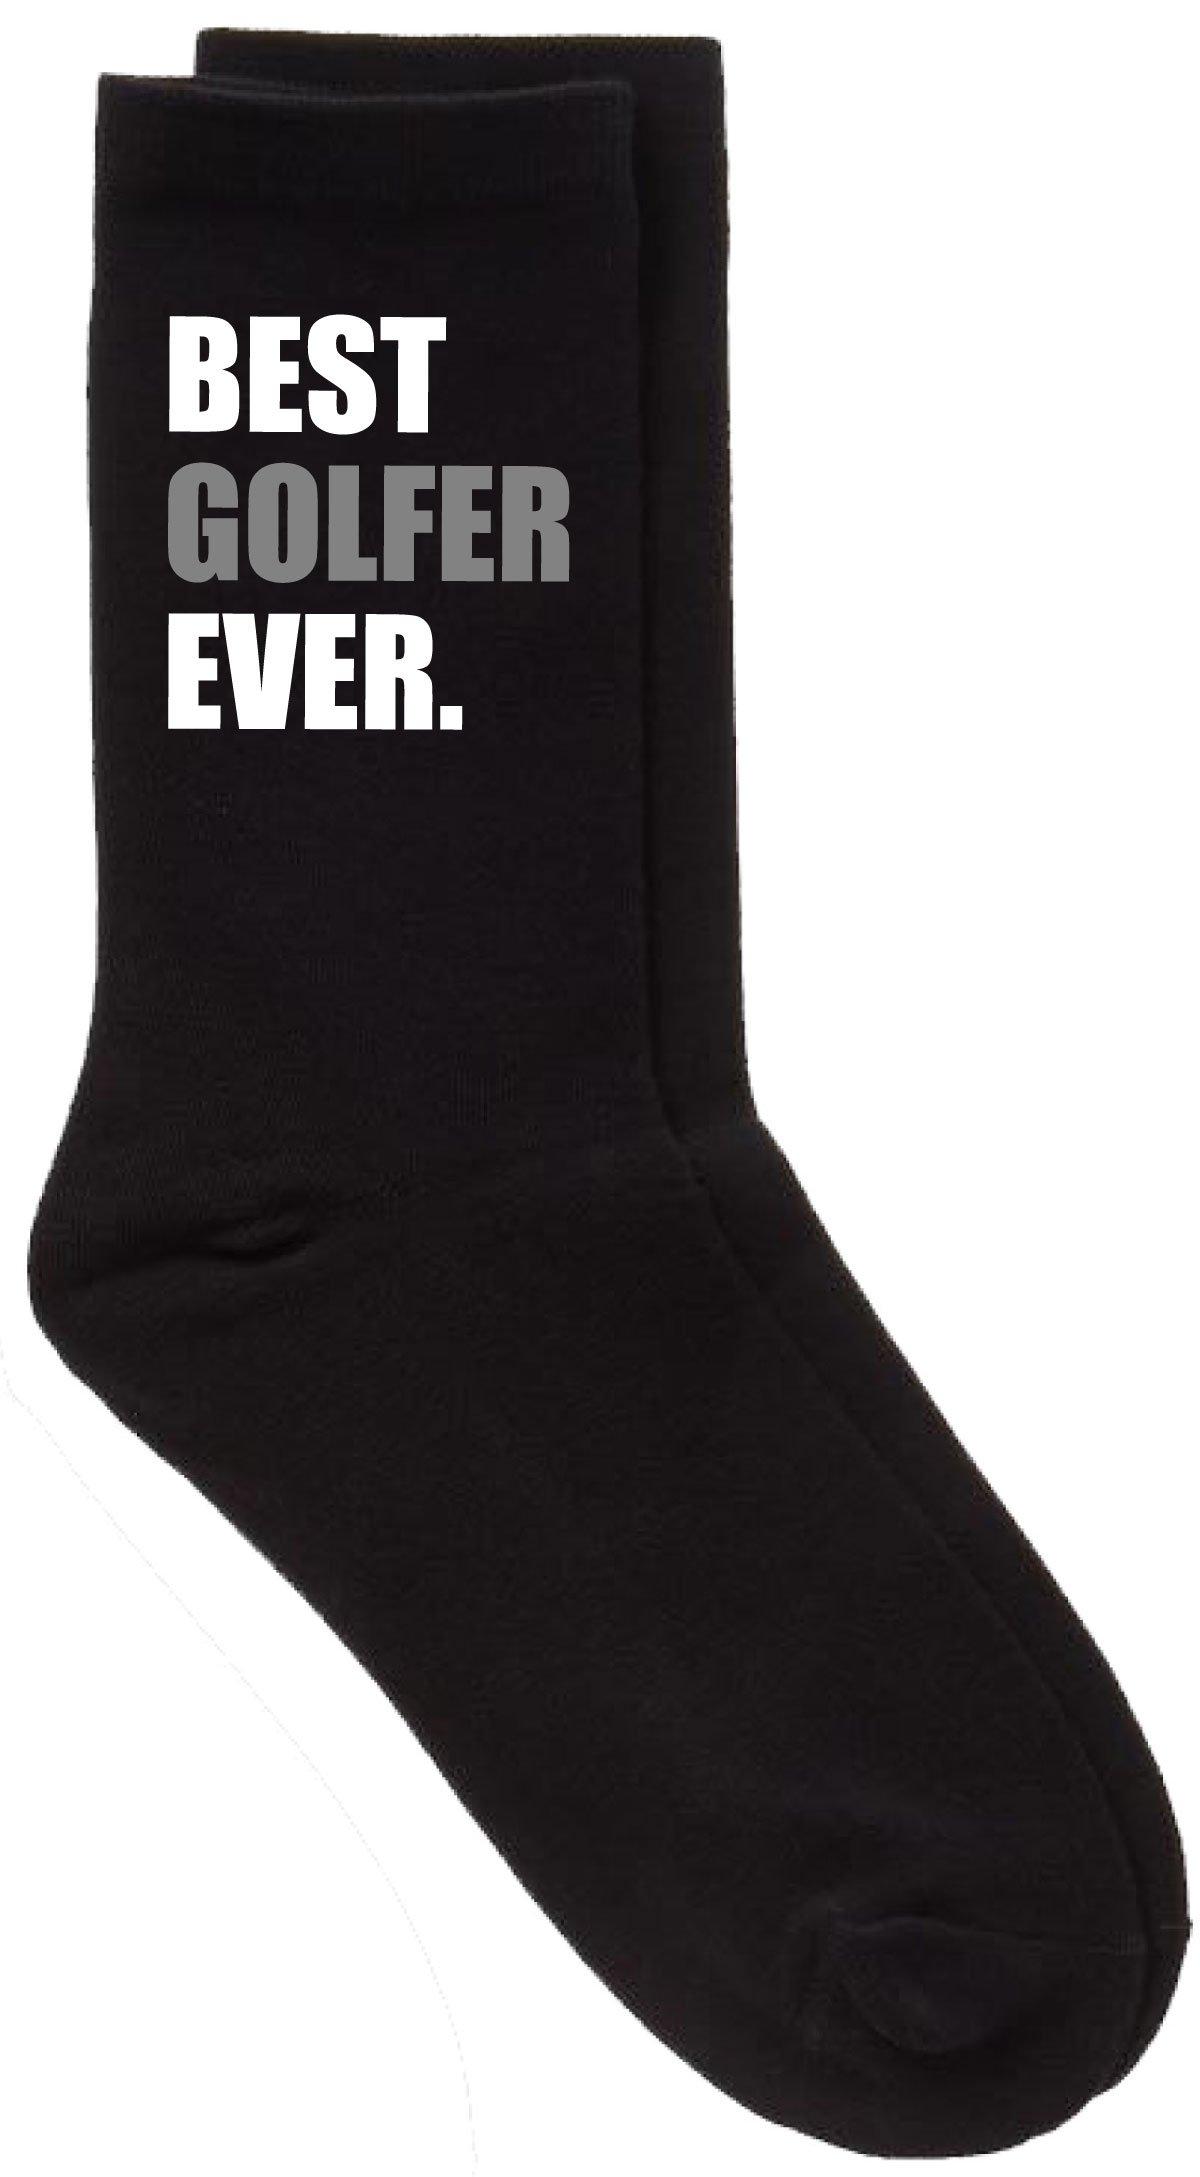 черные носки best dad ever v2 60 second makeover черный Черные носки Best Golfer Ever V2 60 SECOND MAKEOVER, черный